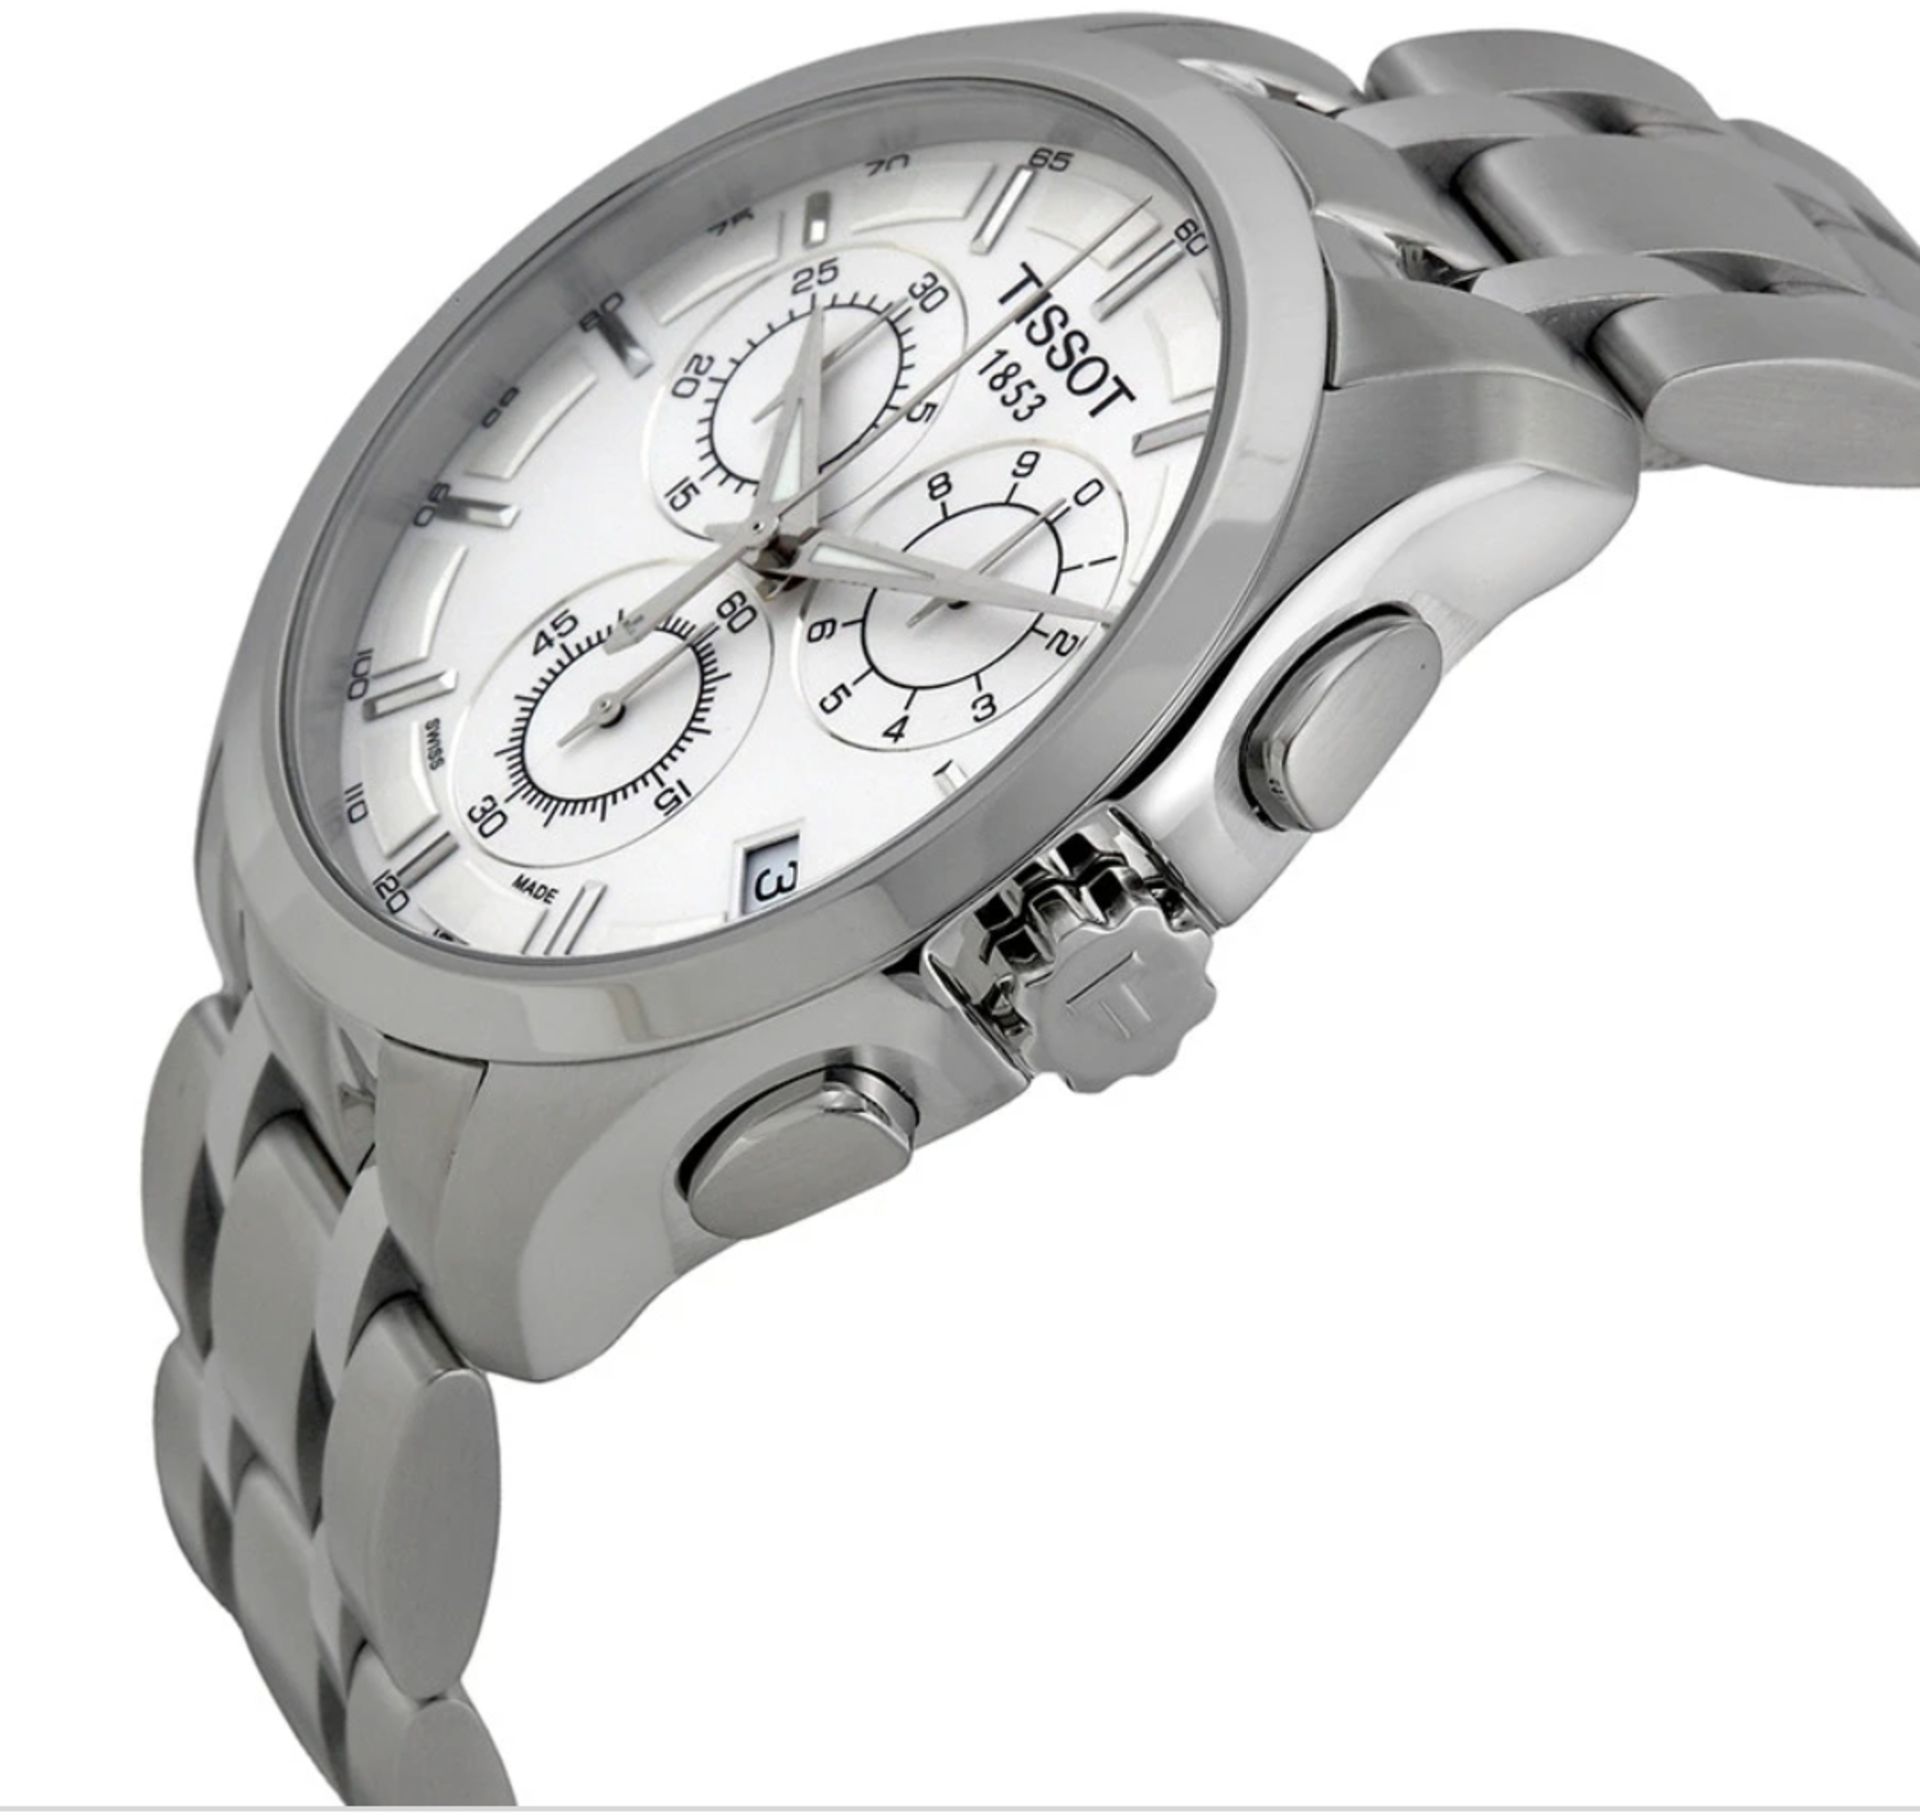 Tissot Men's Couturier 41Mm Steel Bracelet & Case Quartz White Dial Chrono Watch T035.617.11.031.00 - Image 2 of 10